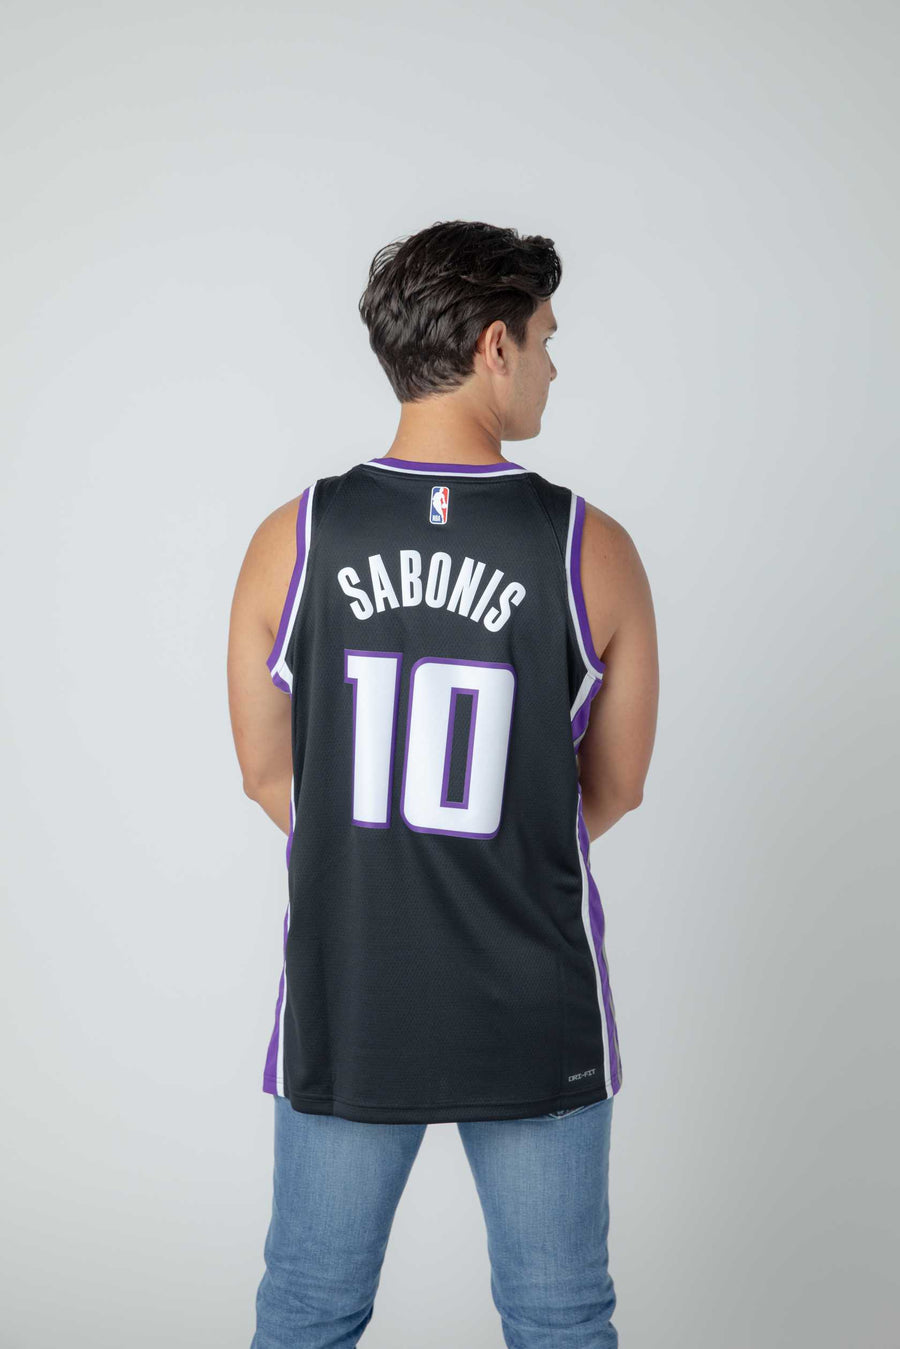 2023/24 Kings SABONIS #10 White NBA Jerseys 热压